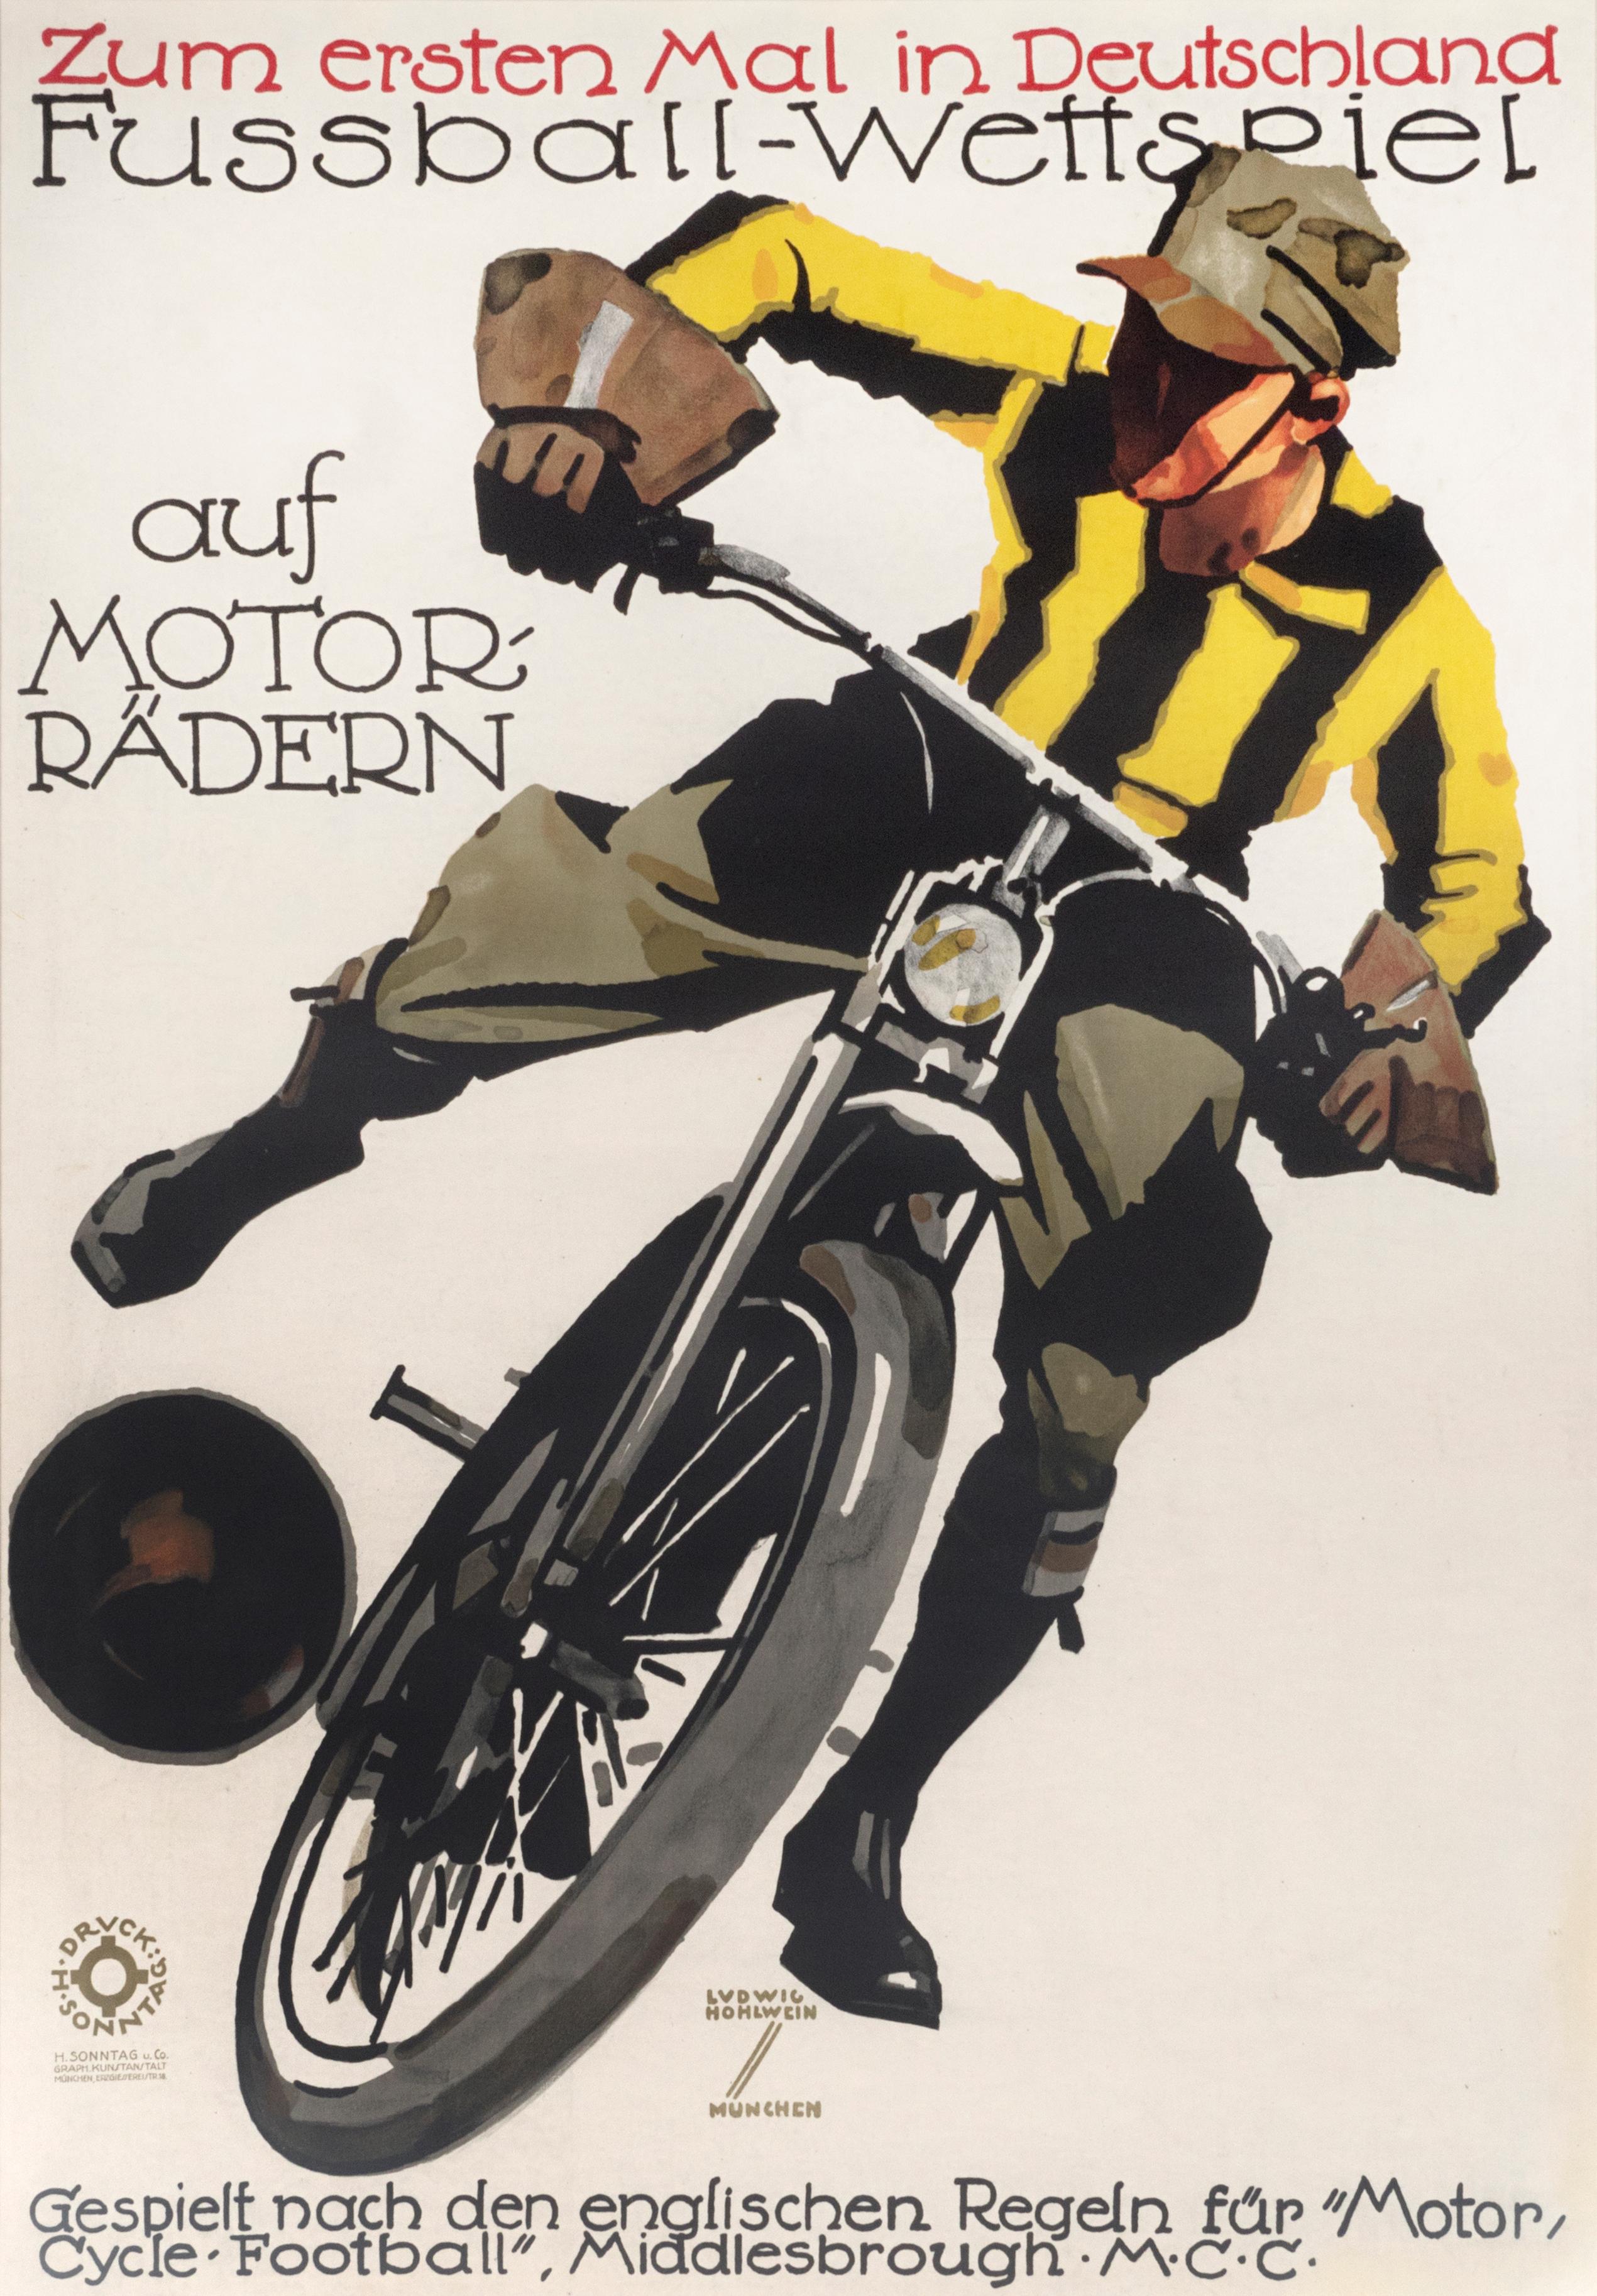 "Fussball-Wettspiel auf Motorradern" Original Vintage Biking Poster - Print by Ludwig Hohlwein